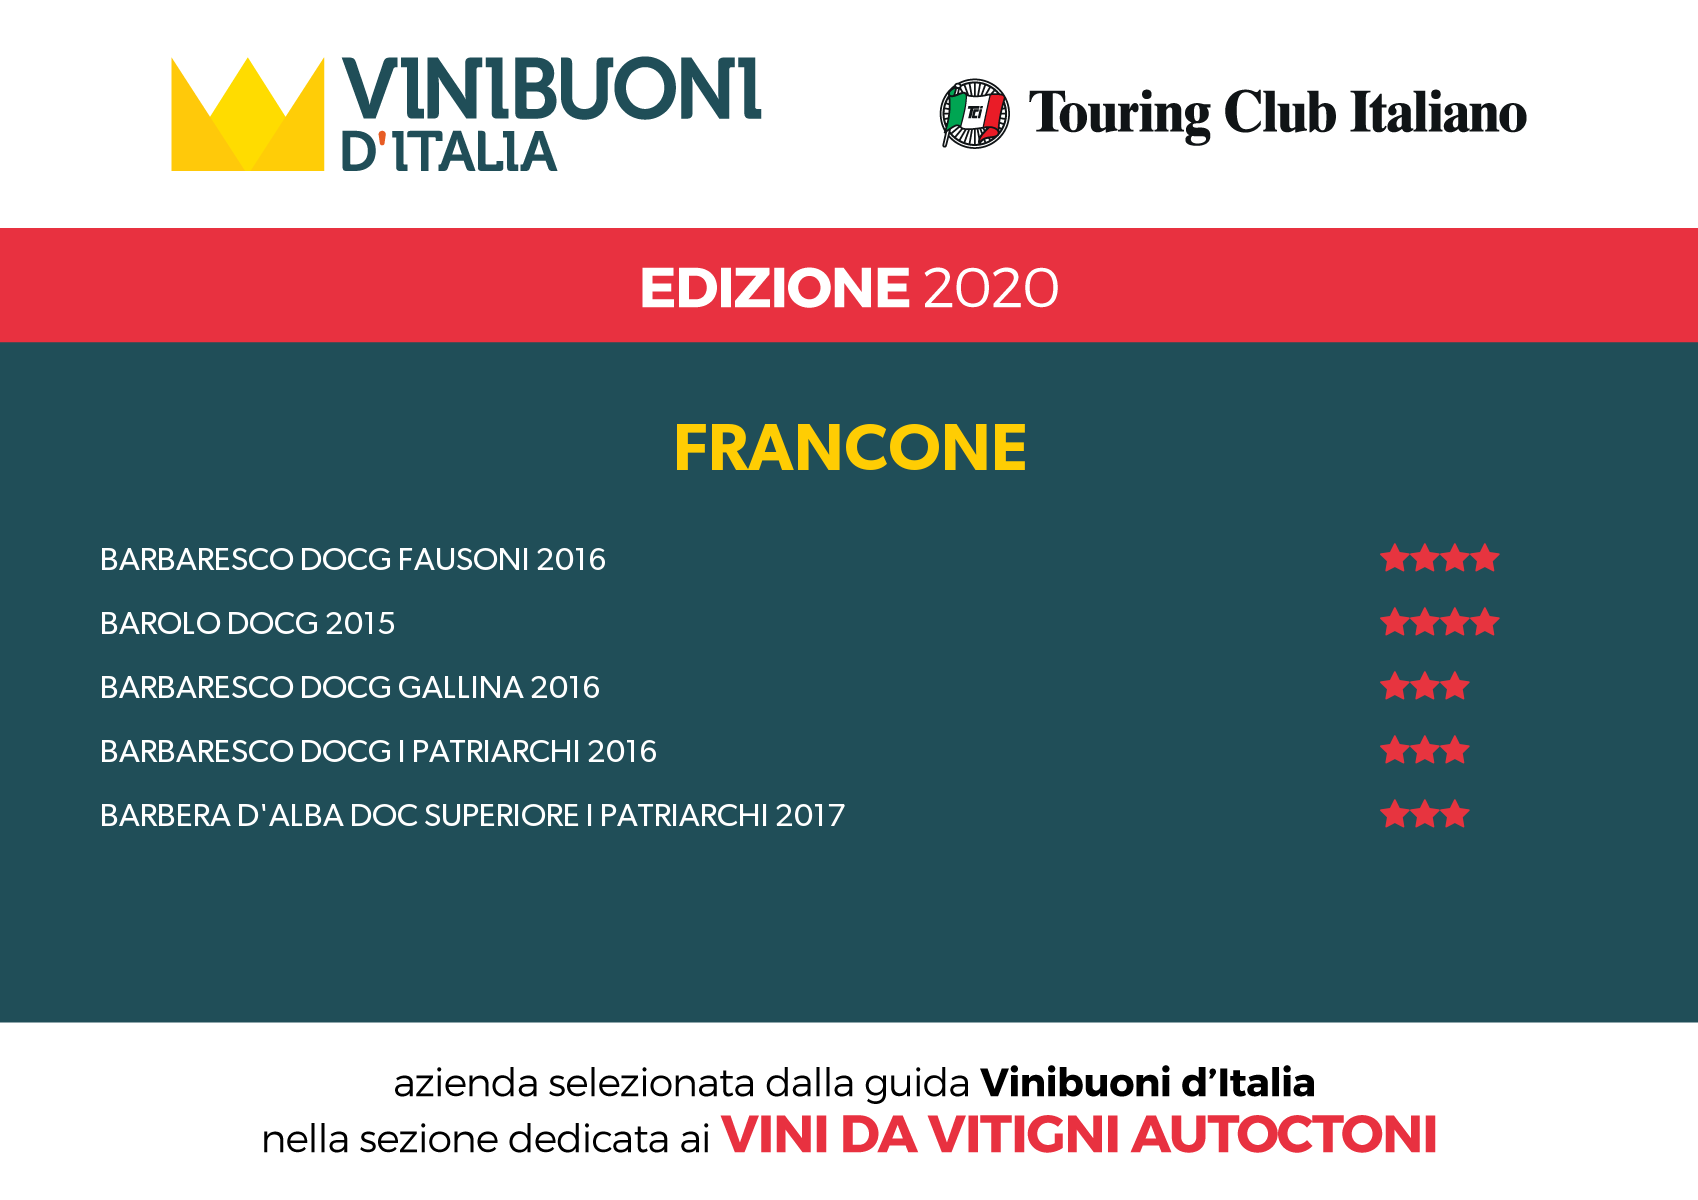 Vini Buoni d'Italia 2020 - sempre più in alto!